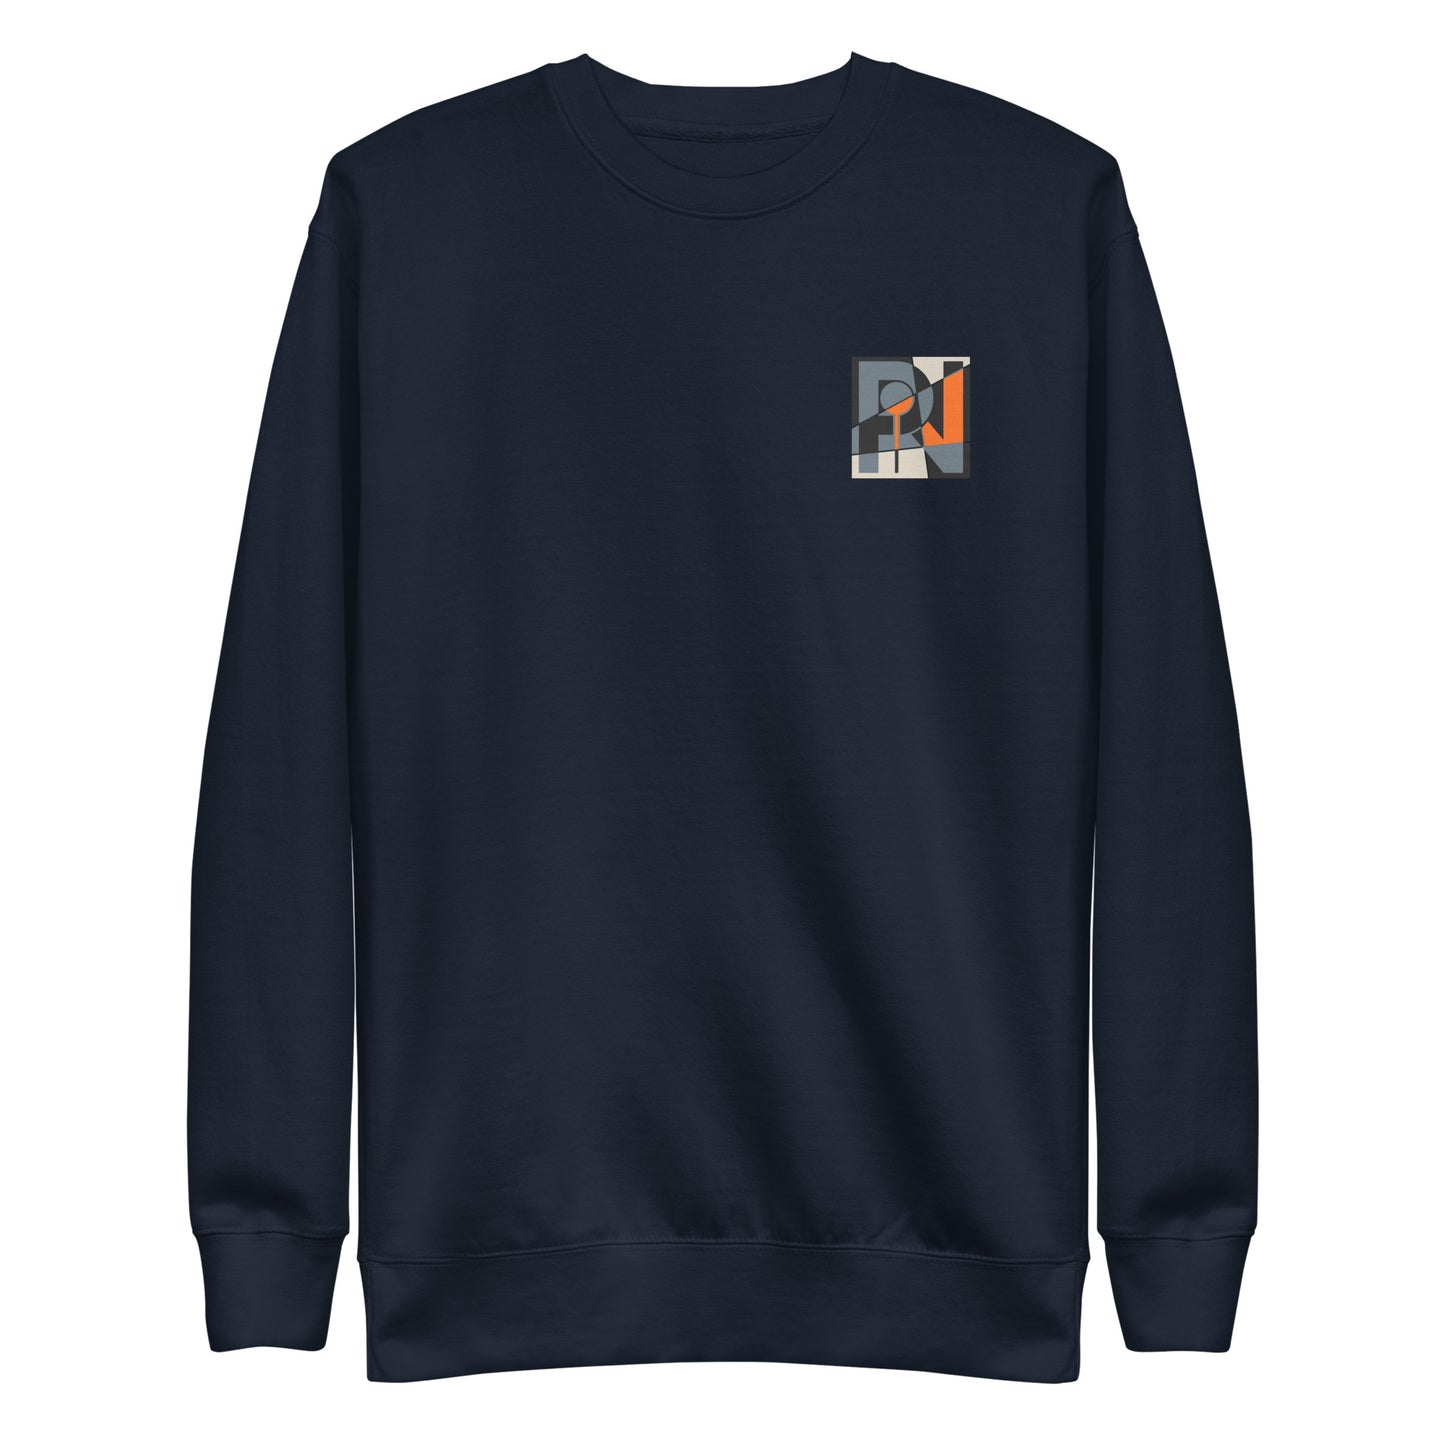 Unisex abstract logo sweatshirt